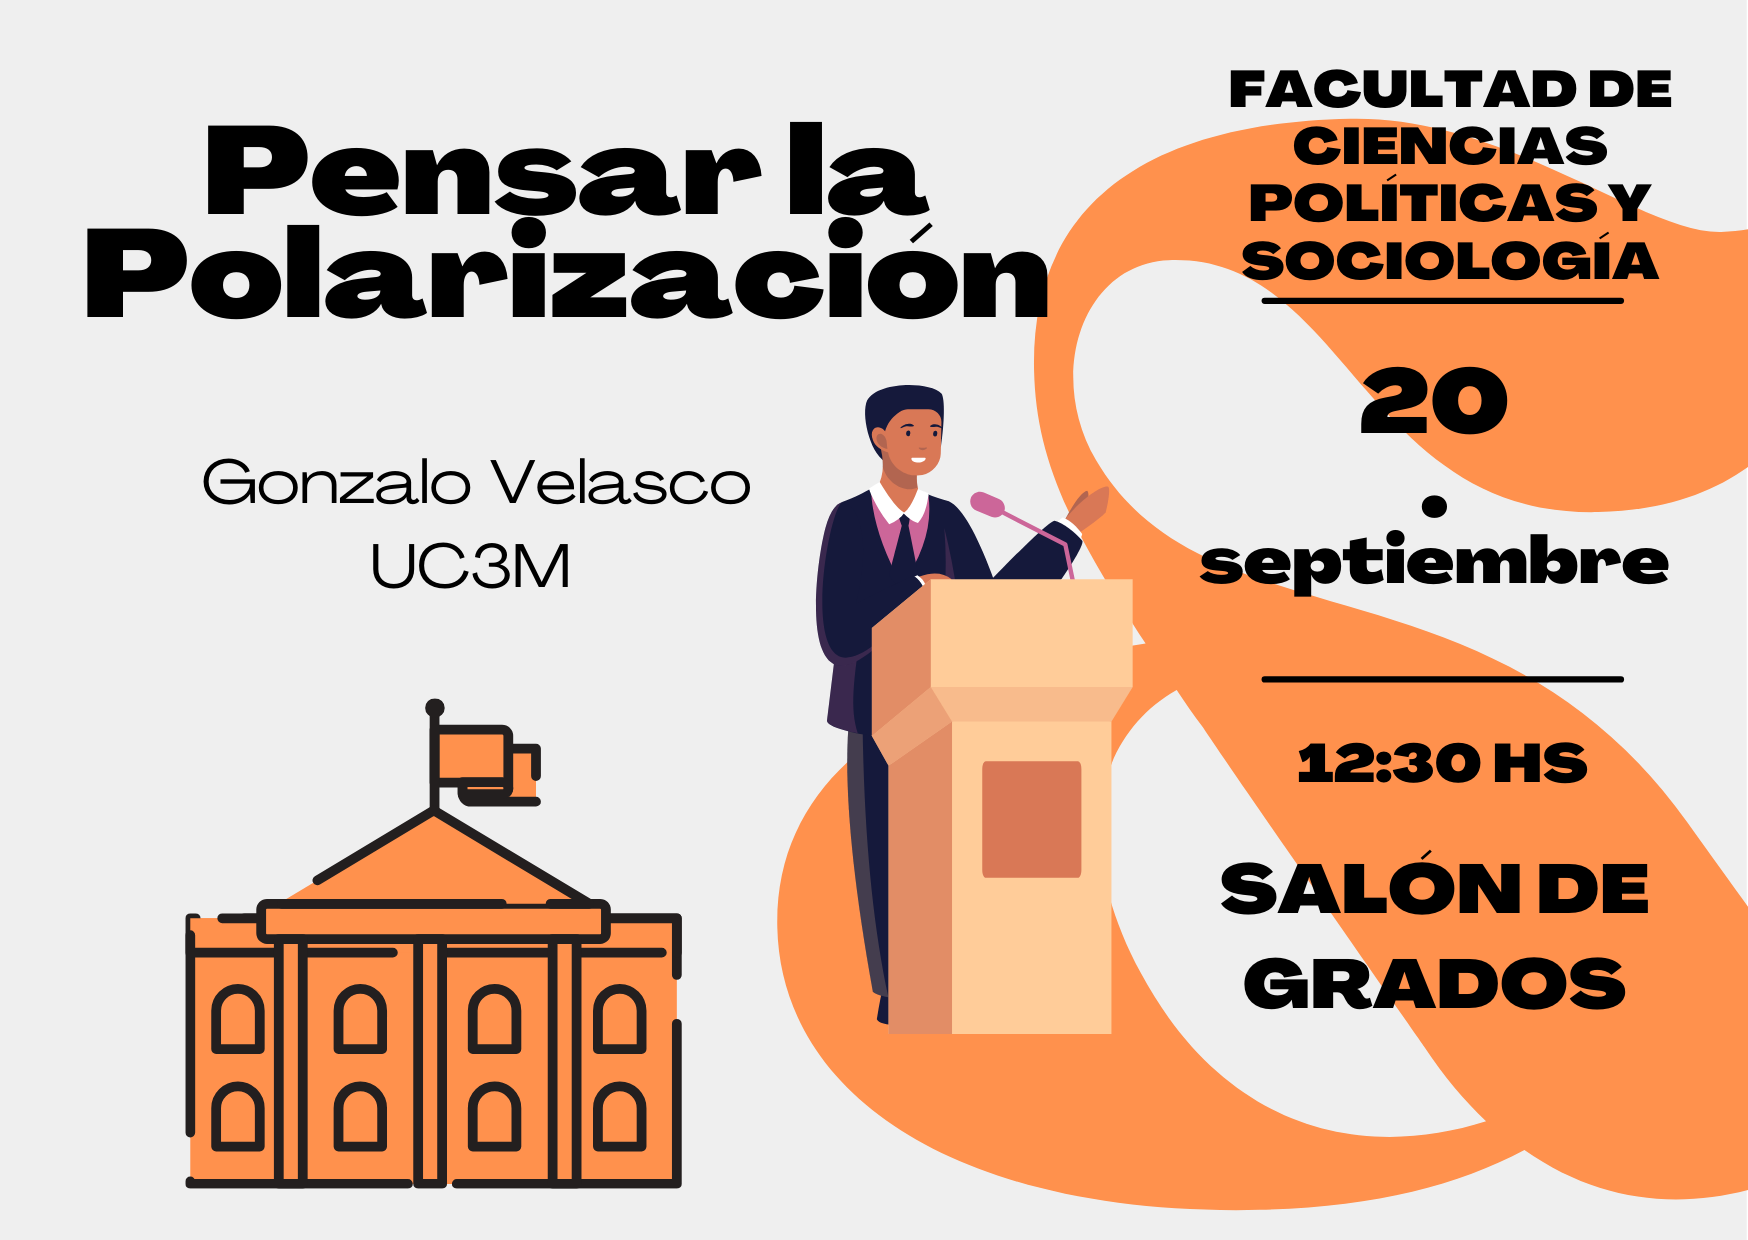 Conferencia de inauguración del Grado de Ciencias Políticas: "Pensar la polarización" a cargo de Gonzalo Velasco 